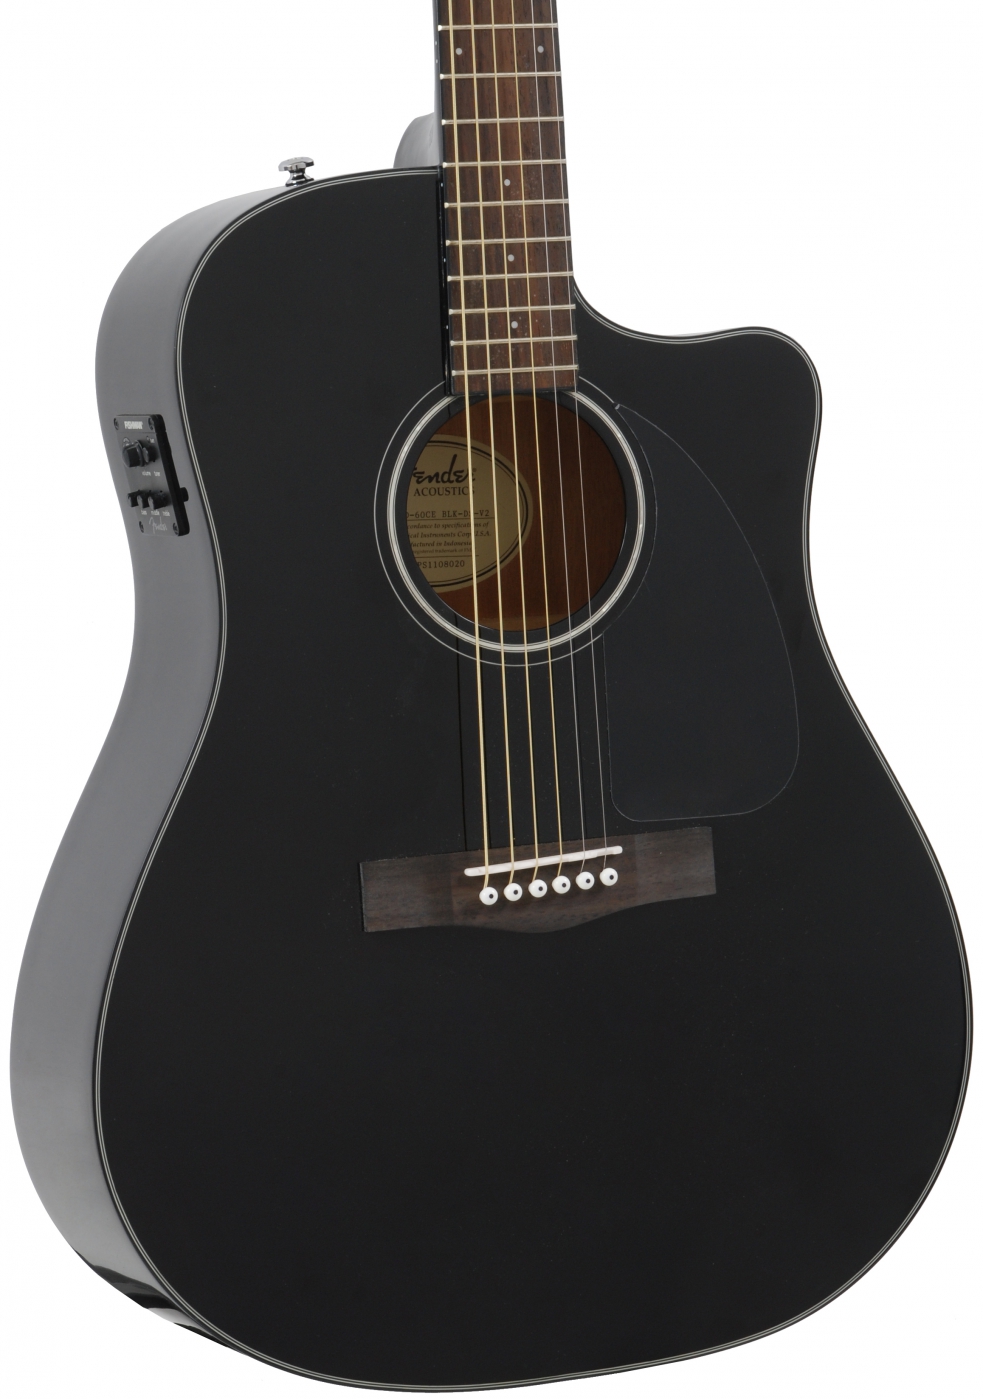 Гитара фендер сд 60. Fender CD-60. Fender c60. Fender CD-60ce Black. Fender CD 60 Guitar Black.